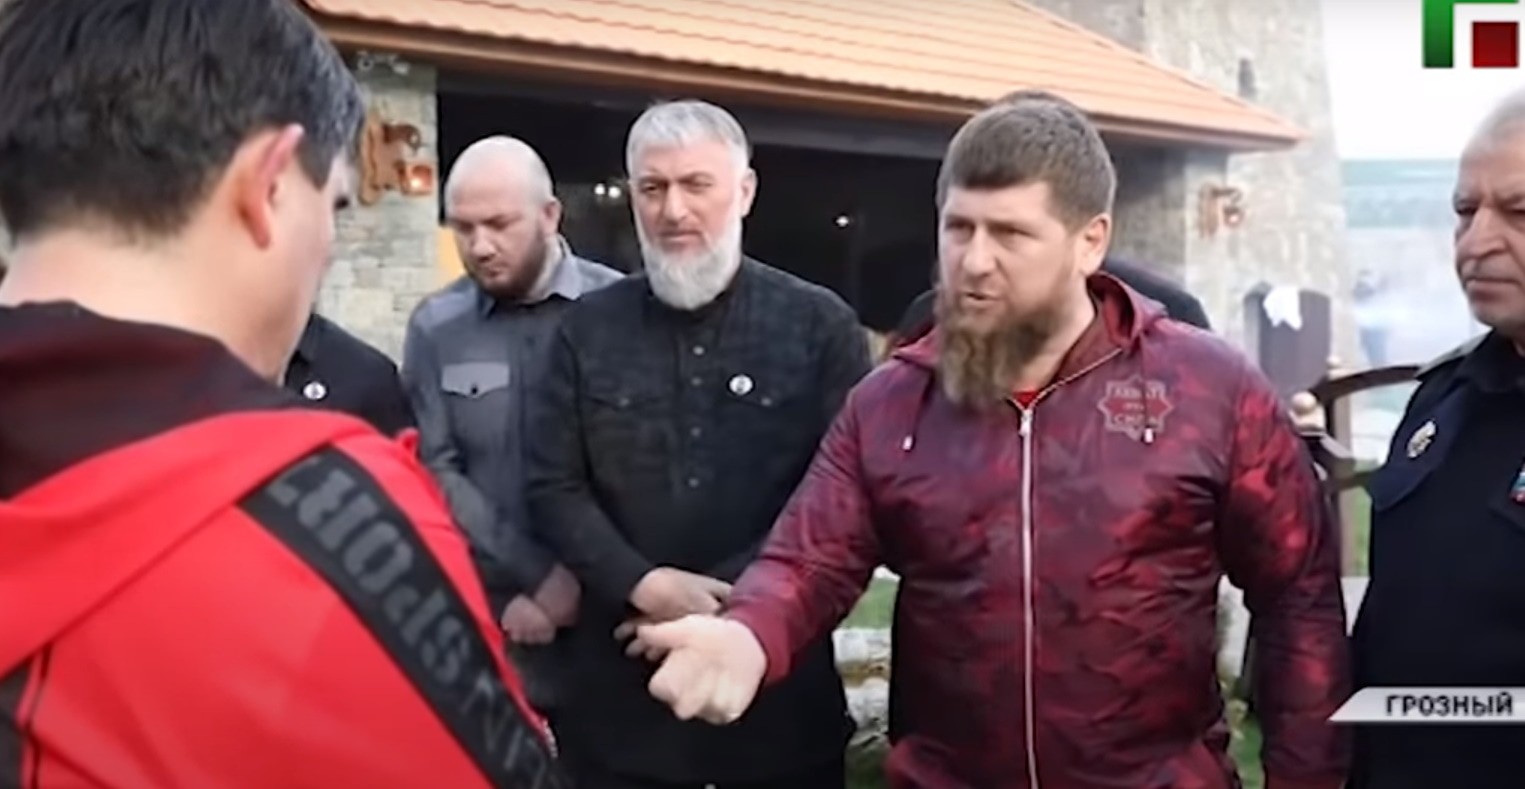 Кадыров отчитывает Ахметханова. Фото: скриншот видео ЧГТРК "Грозный, https://grozny.tv/news.php?id=37035